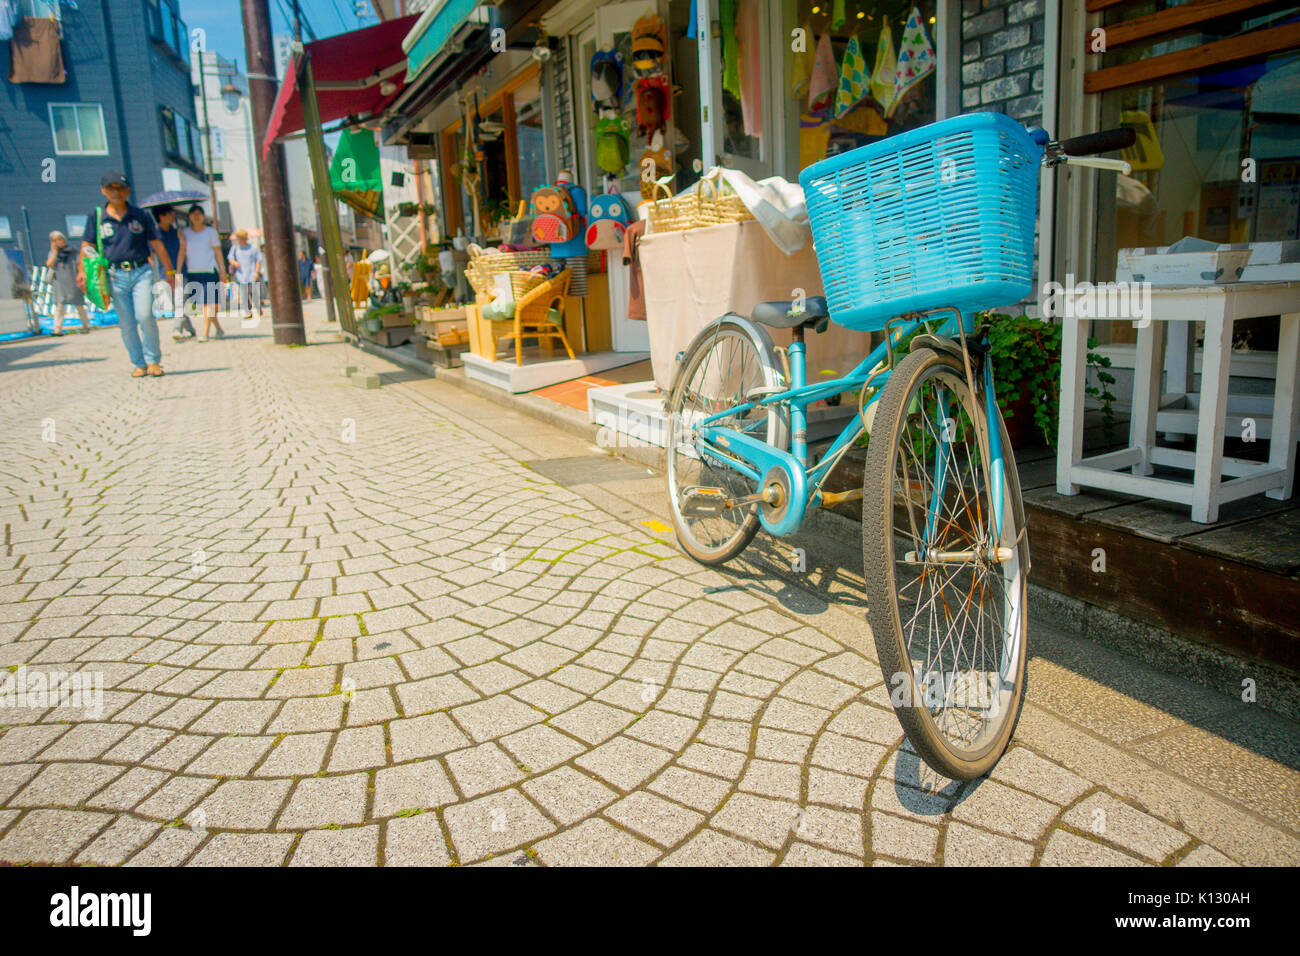 TOKYO, JAPON - 28 juin 2017 : vieux vélos rouillés dans Komachi-dori, dans la région de Kamakura au Japon Tokyo, une rue élégante dans l'ancienne ville de Kamakura avec restaurants et magasins à la mode Historique Banque D'Images